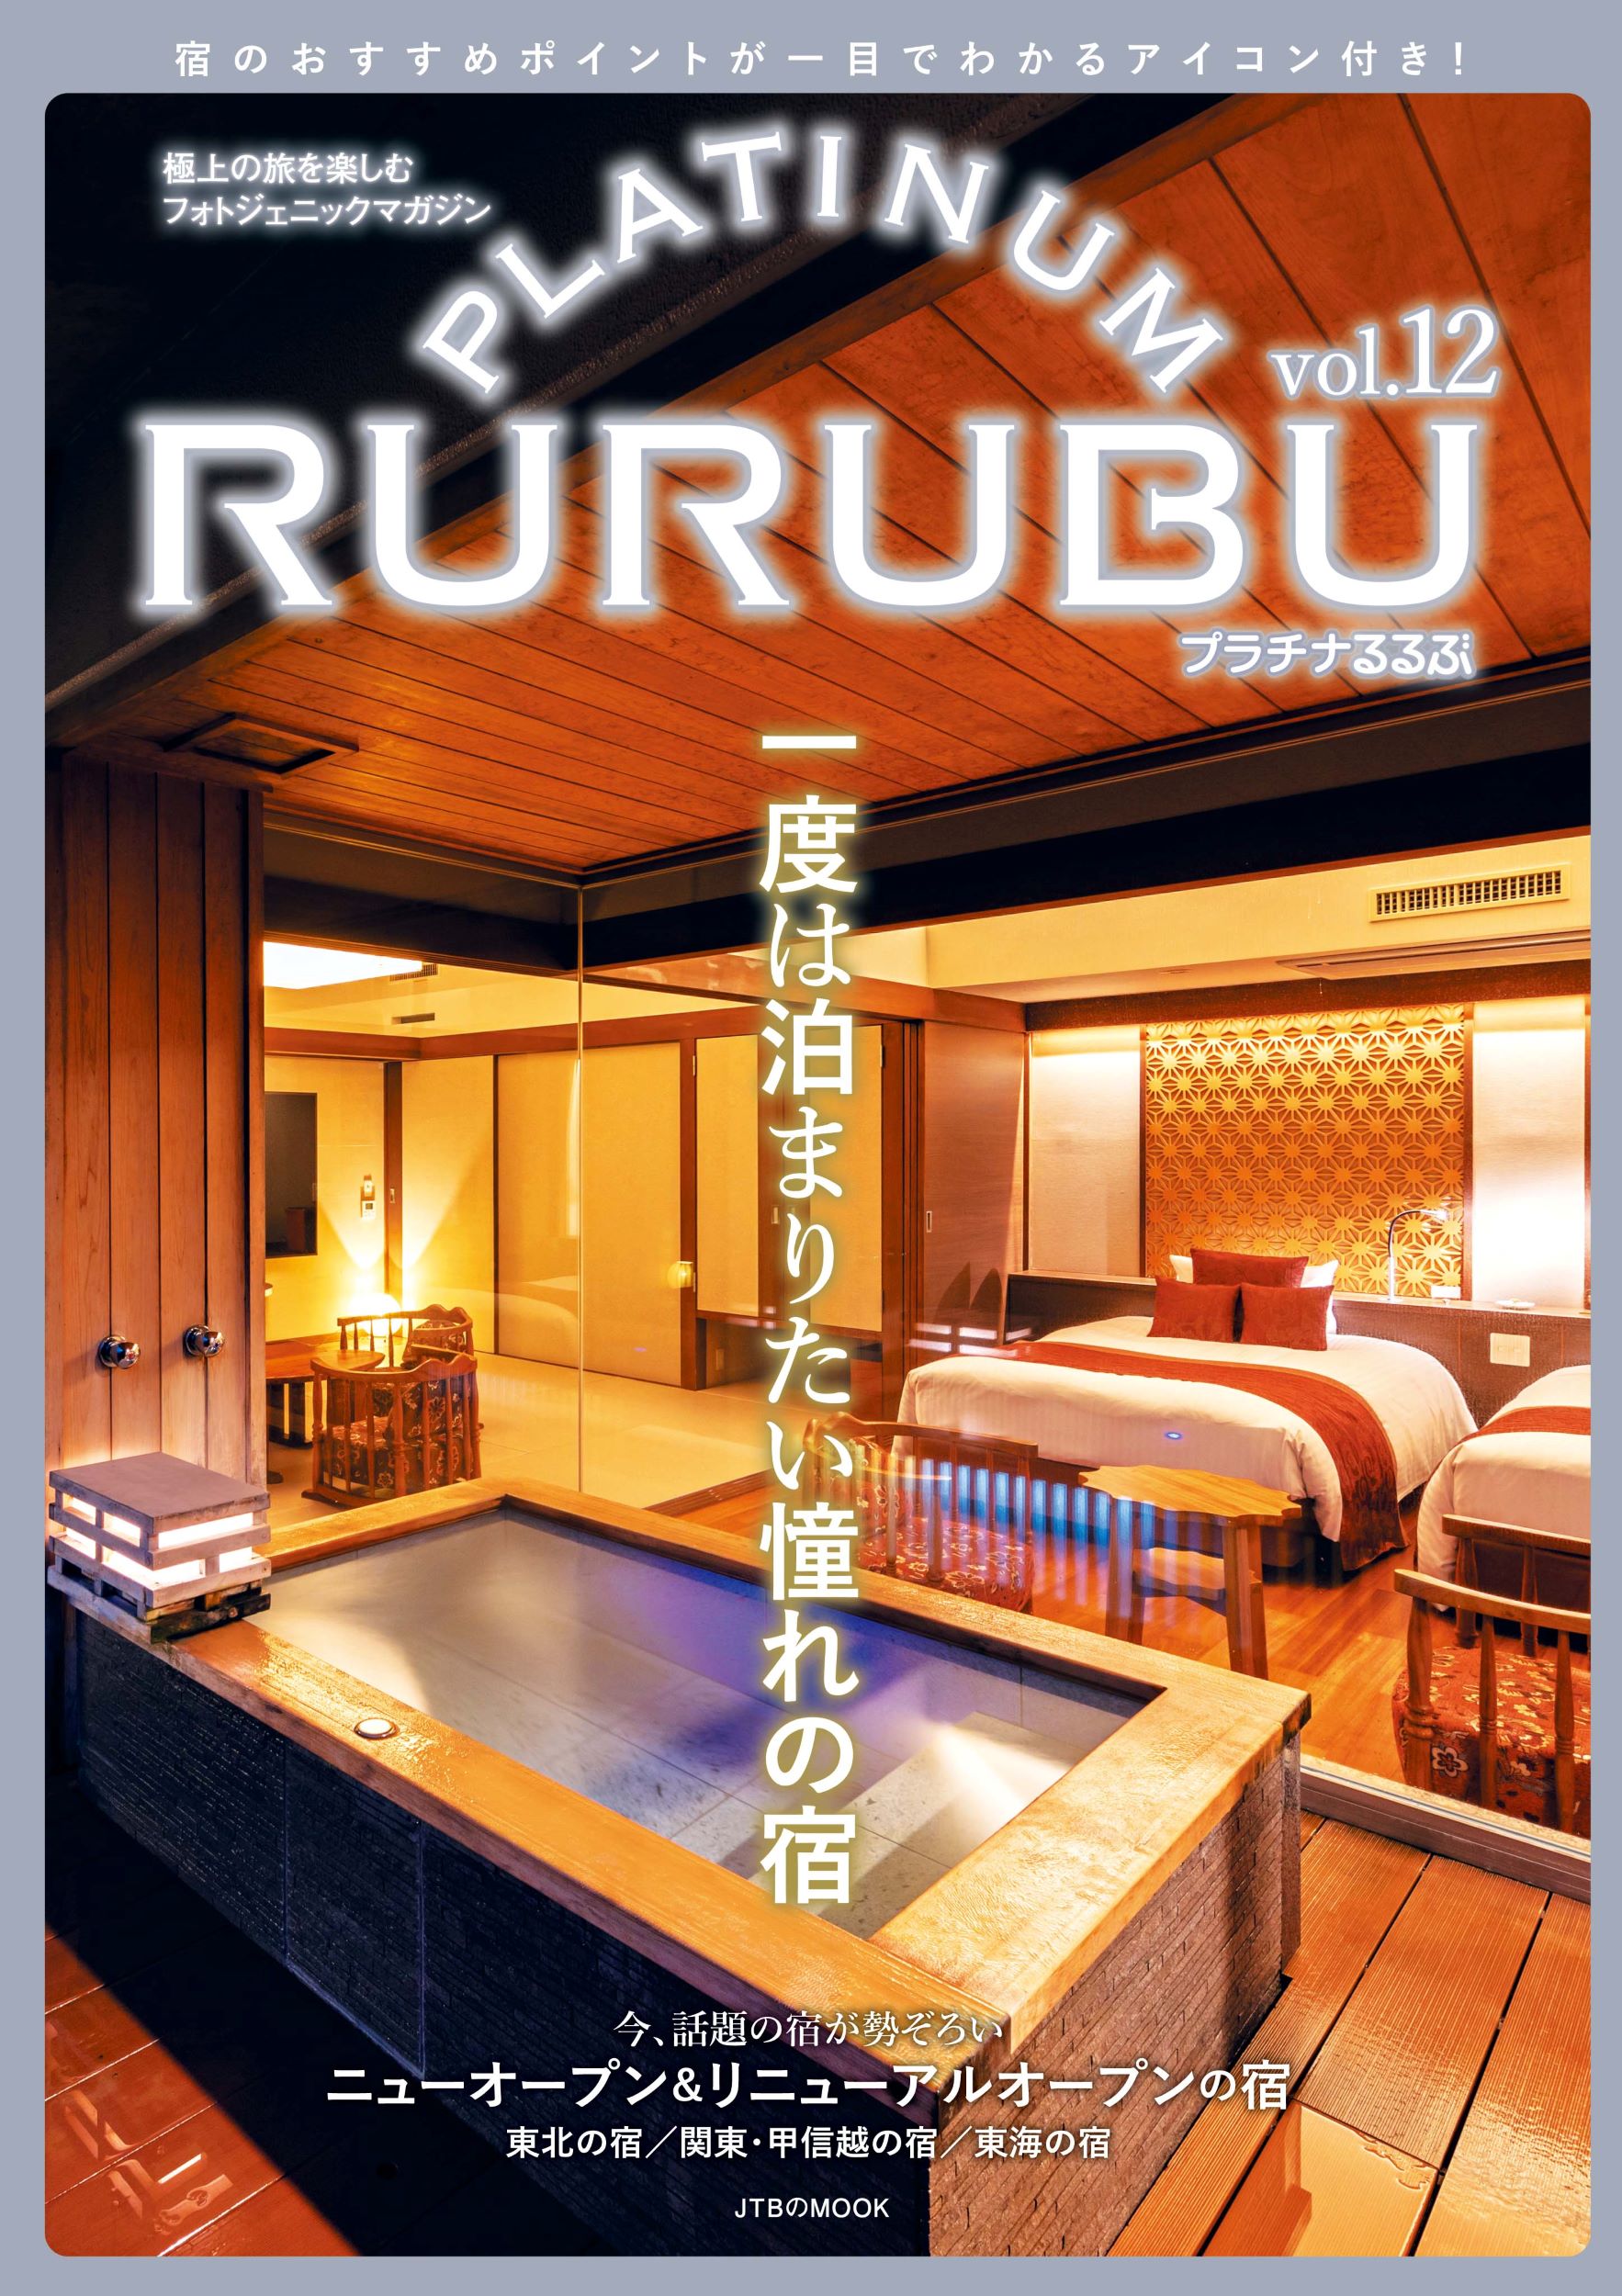 PLATINUM RURUBU vol.12の商品画像